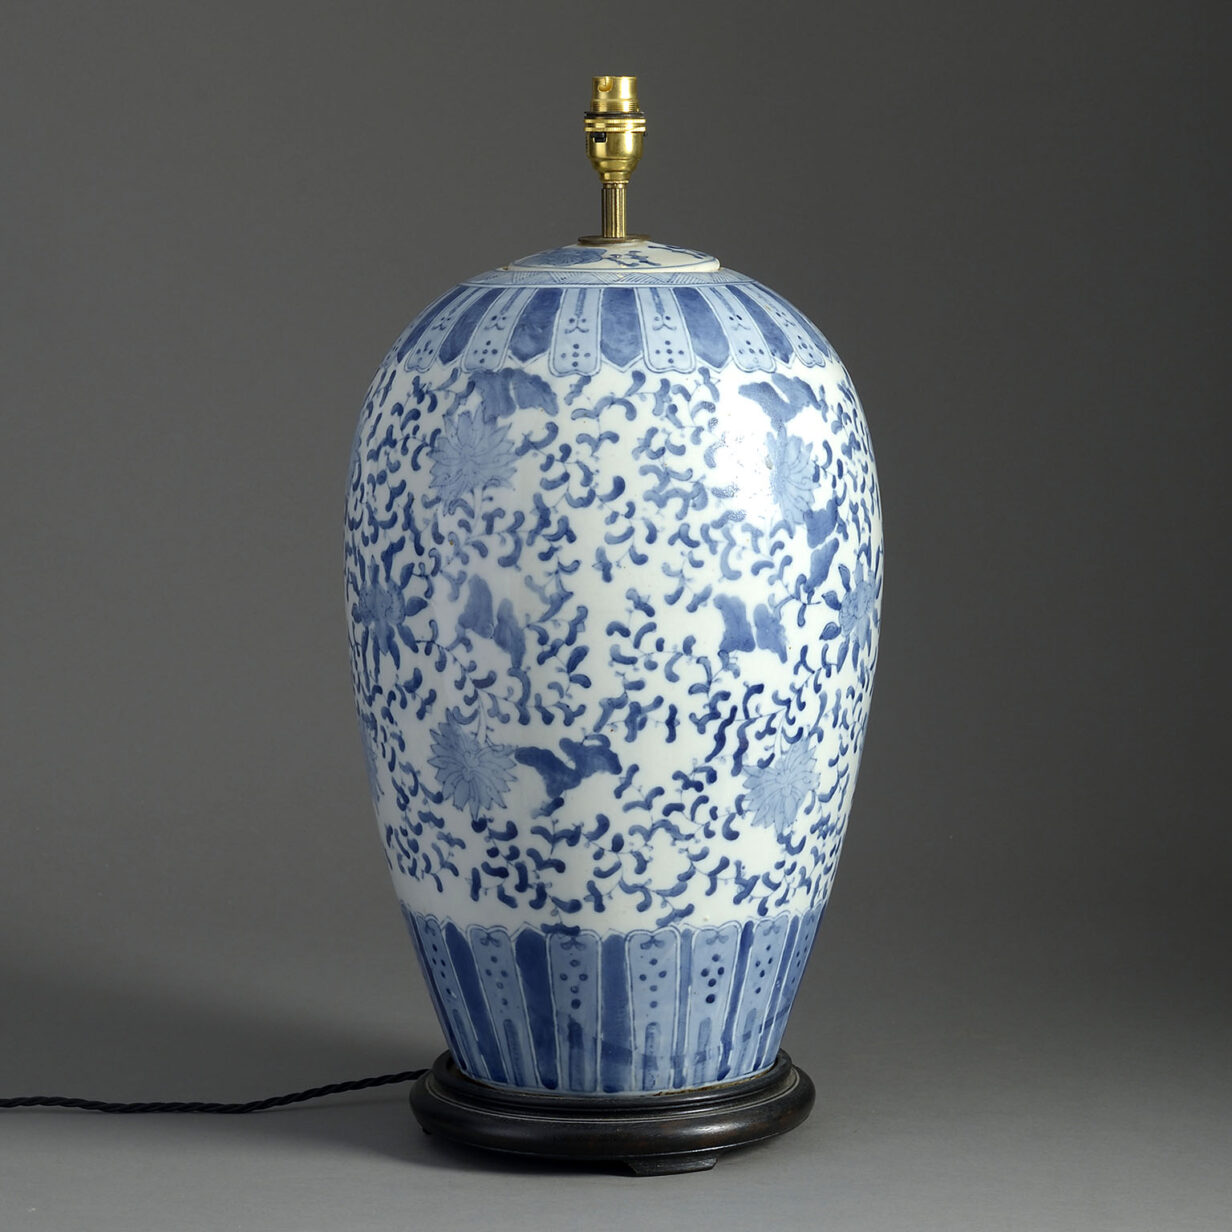 Large 19th century blue and white glazed porcelain jar lamp